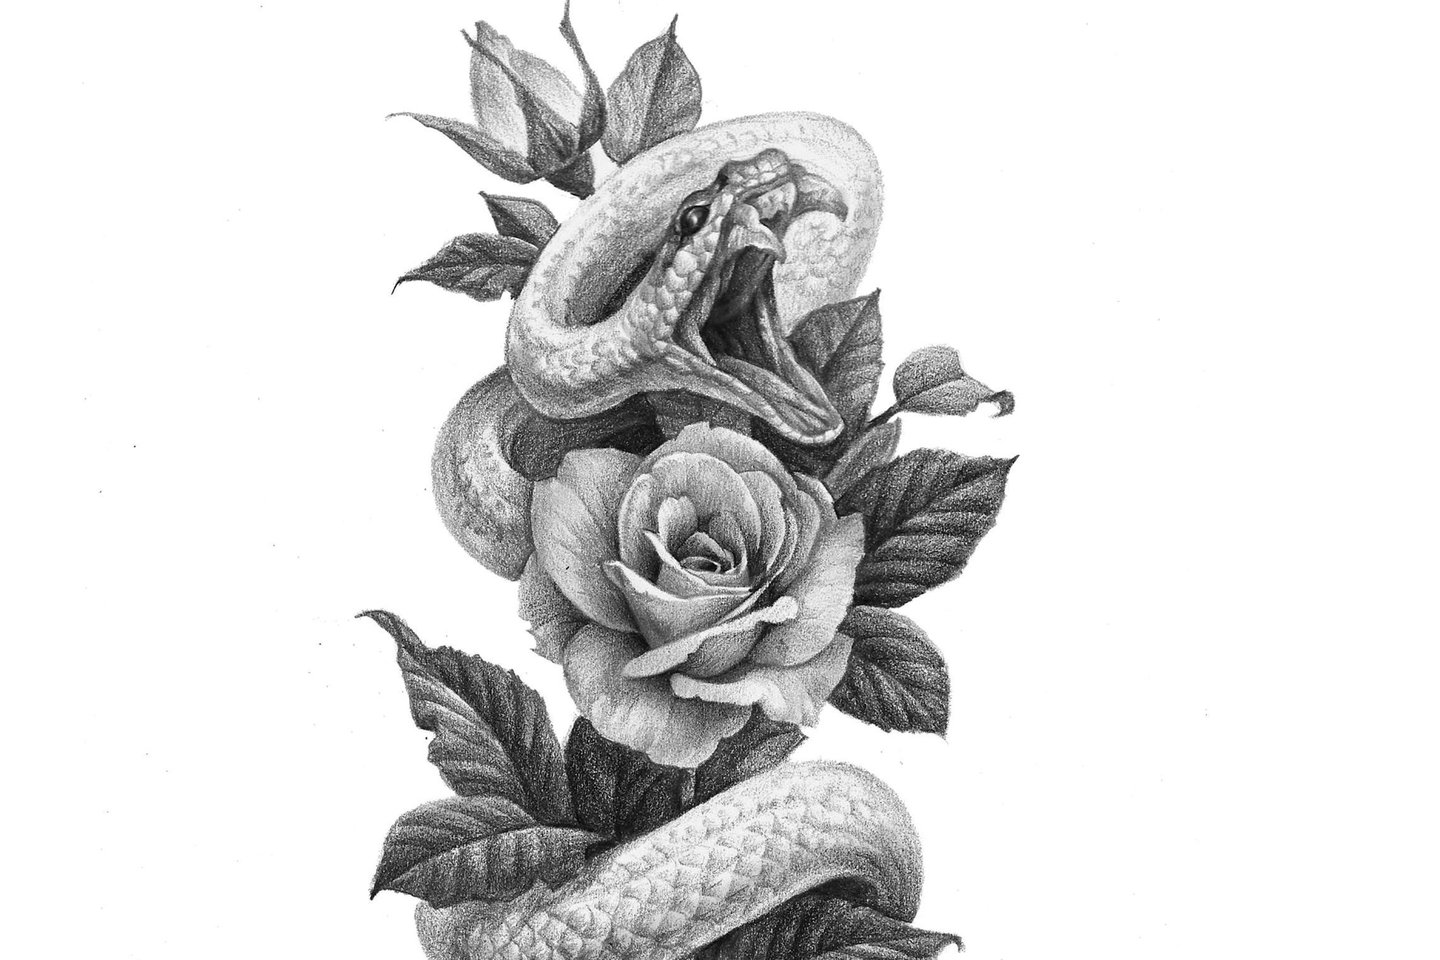 Изображения по запросу Тату эскиз змея